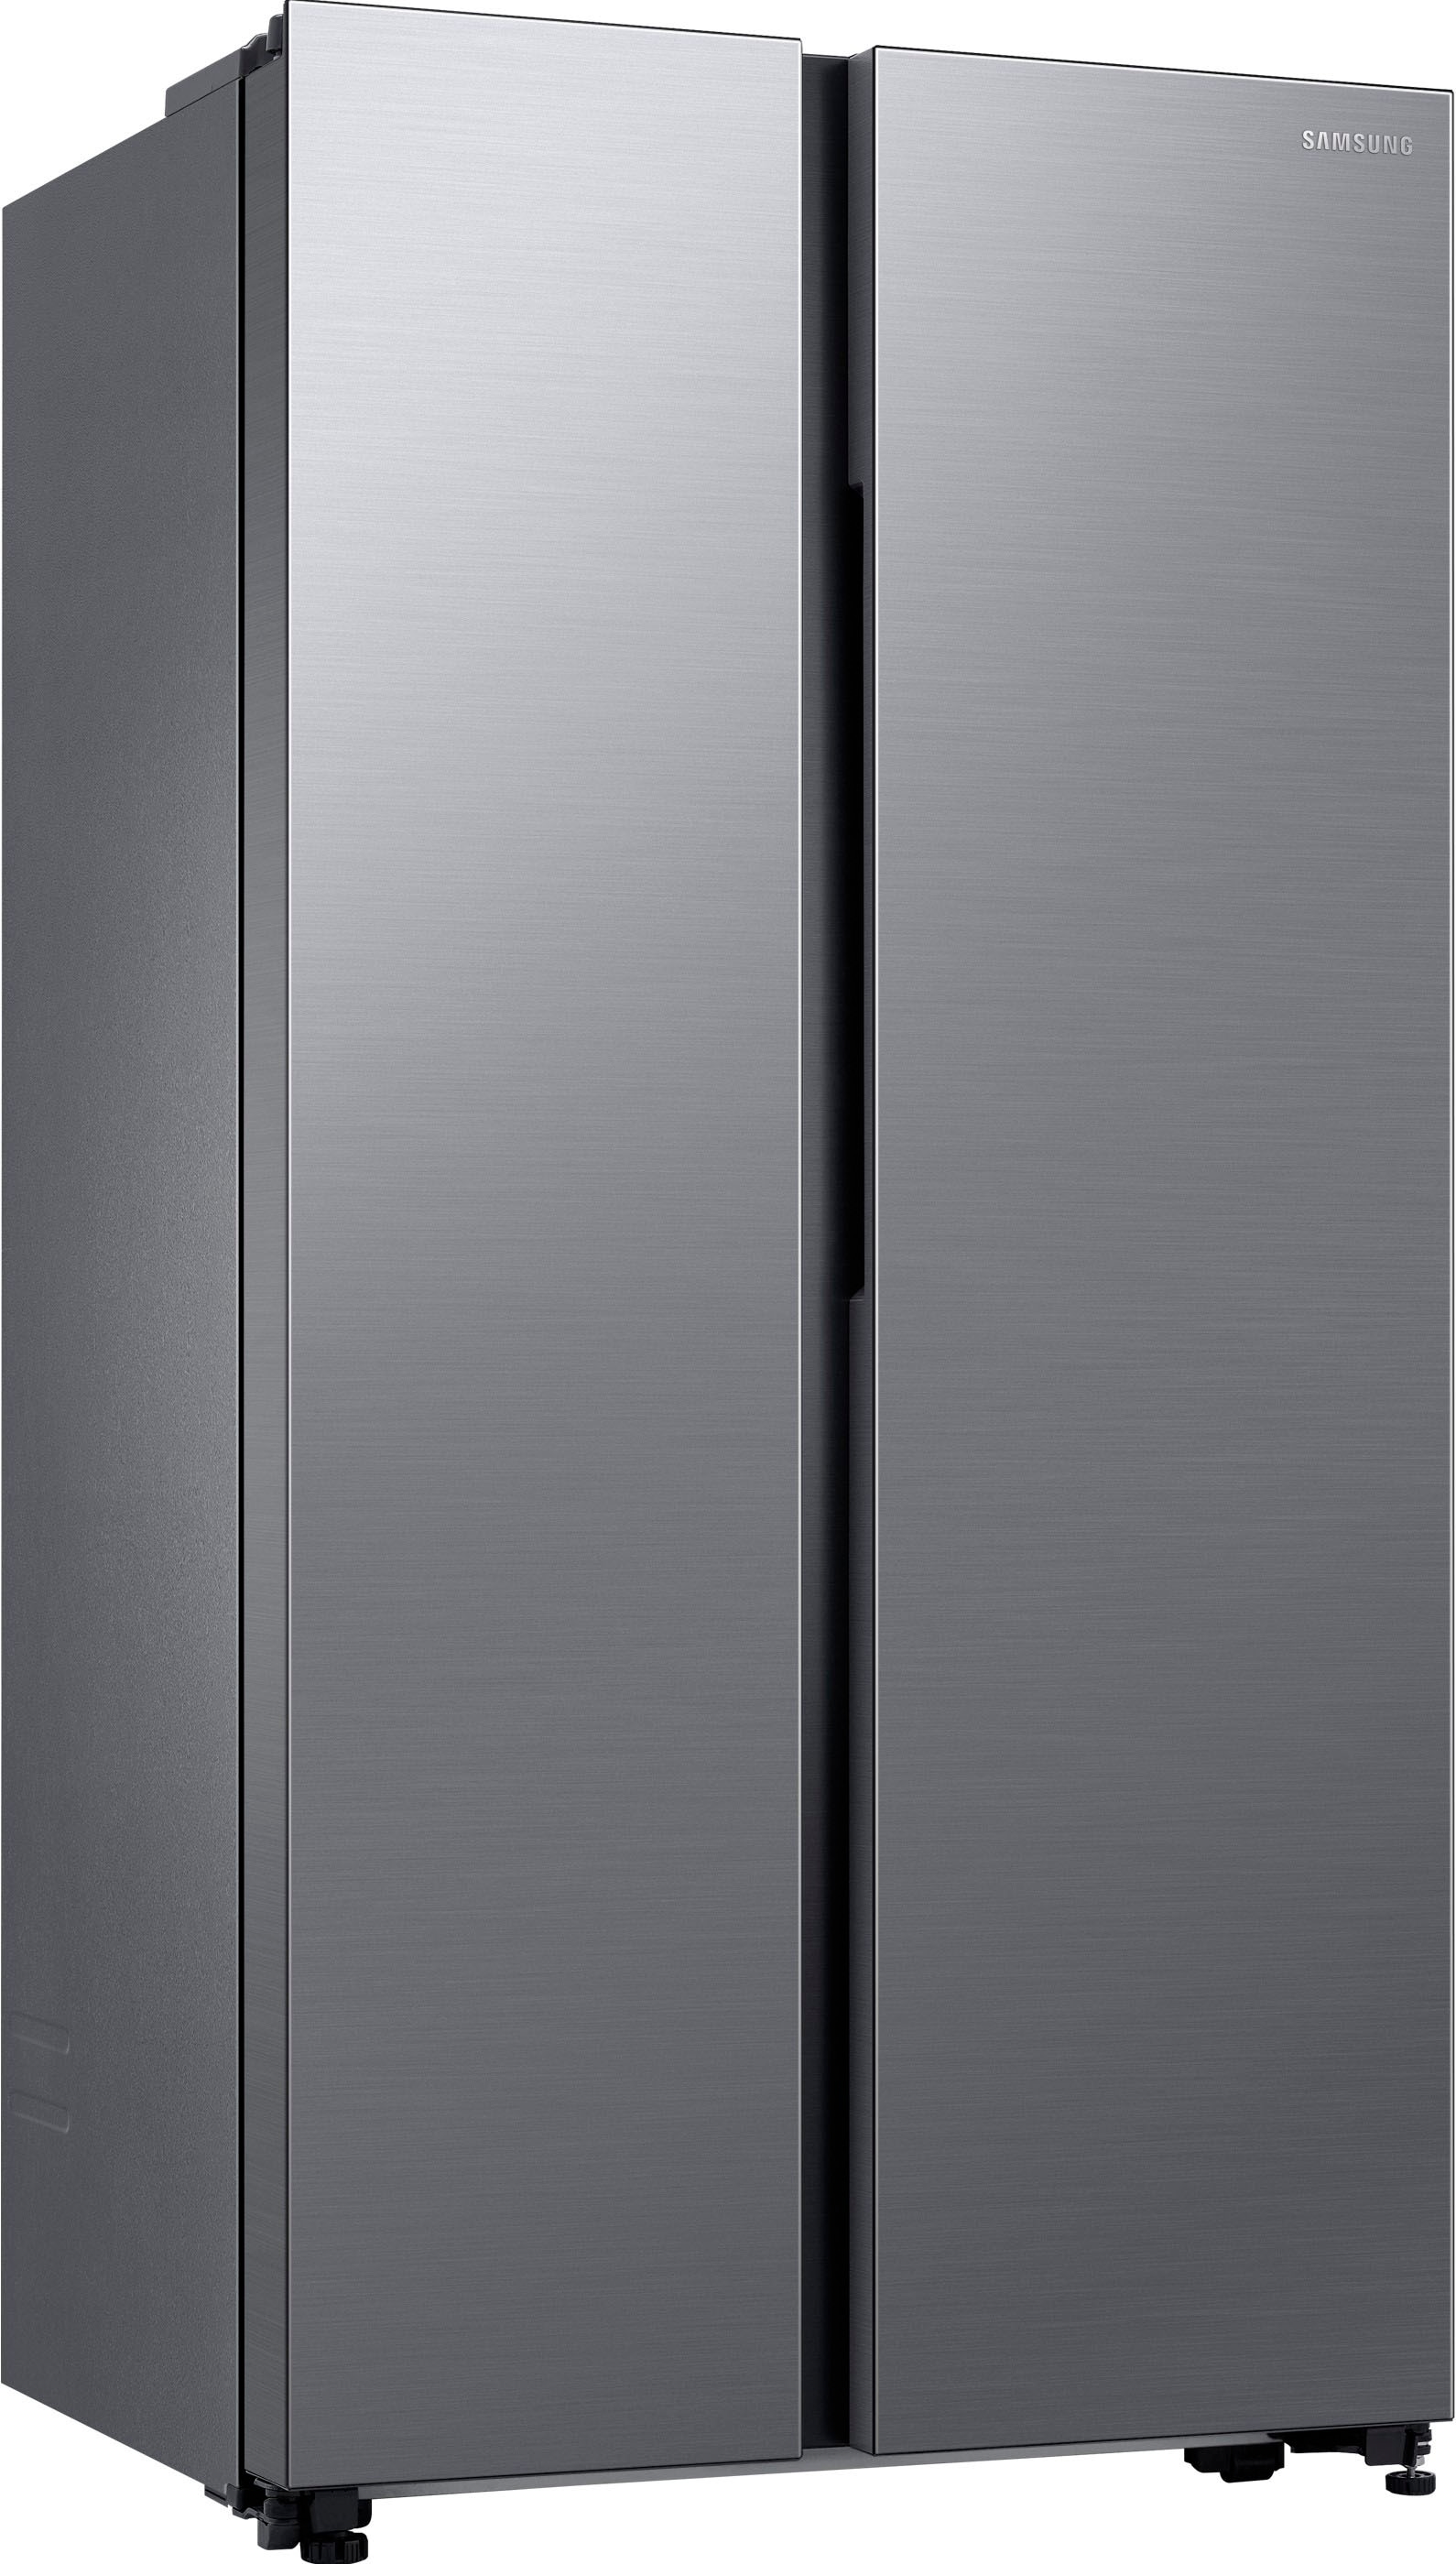 Samsung Side-by-Side »RS62DG5003S9«, RS62DG5003S9, 178 cm hoch, 91,2 cm breit, SpaceMaxᵀᴹ - Viel Platz für deine Vorräte